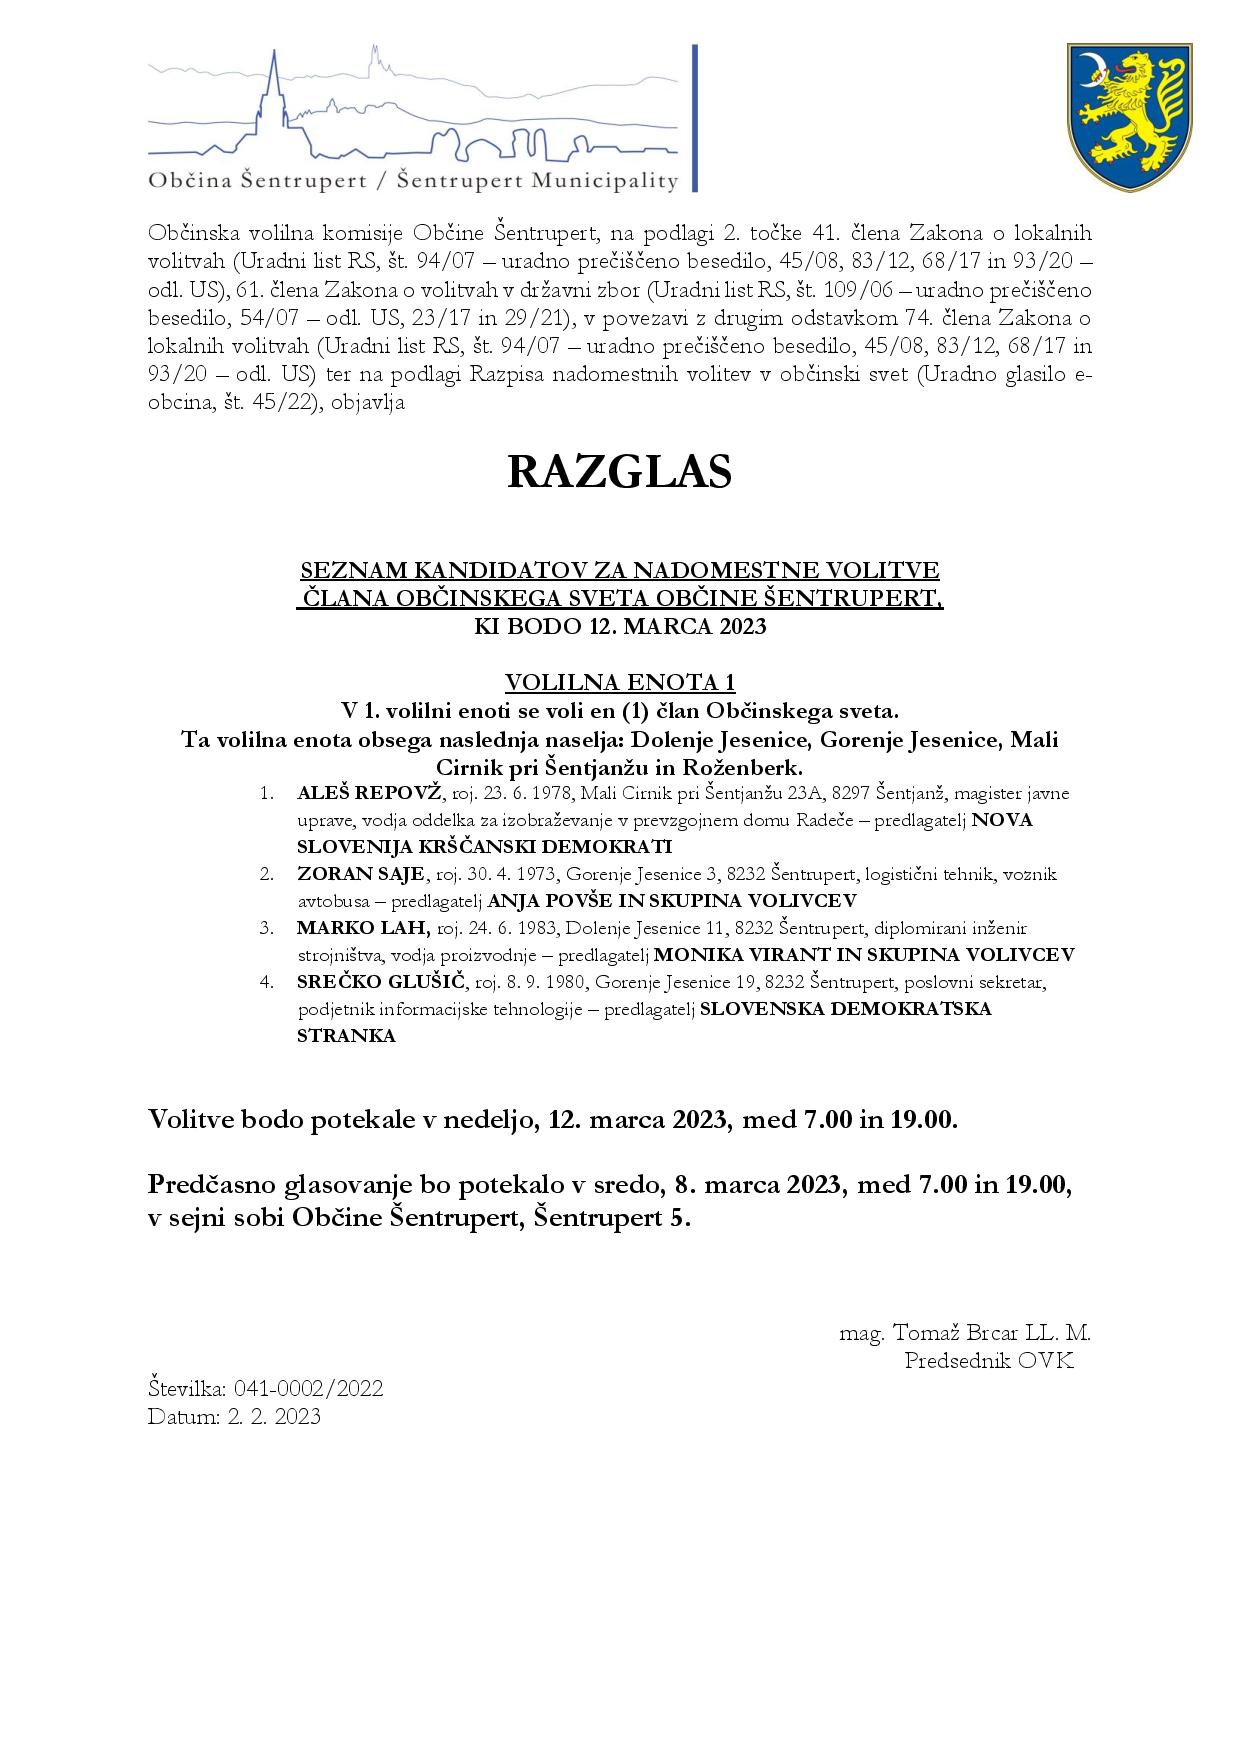 Razglas-page-001